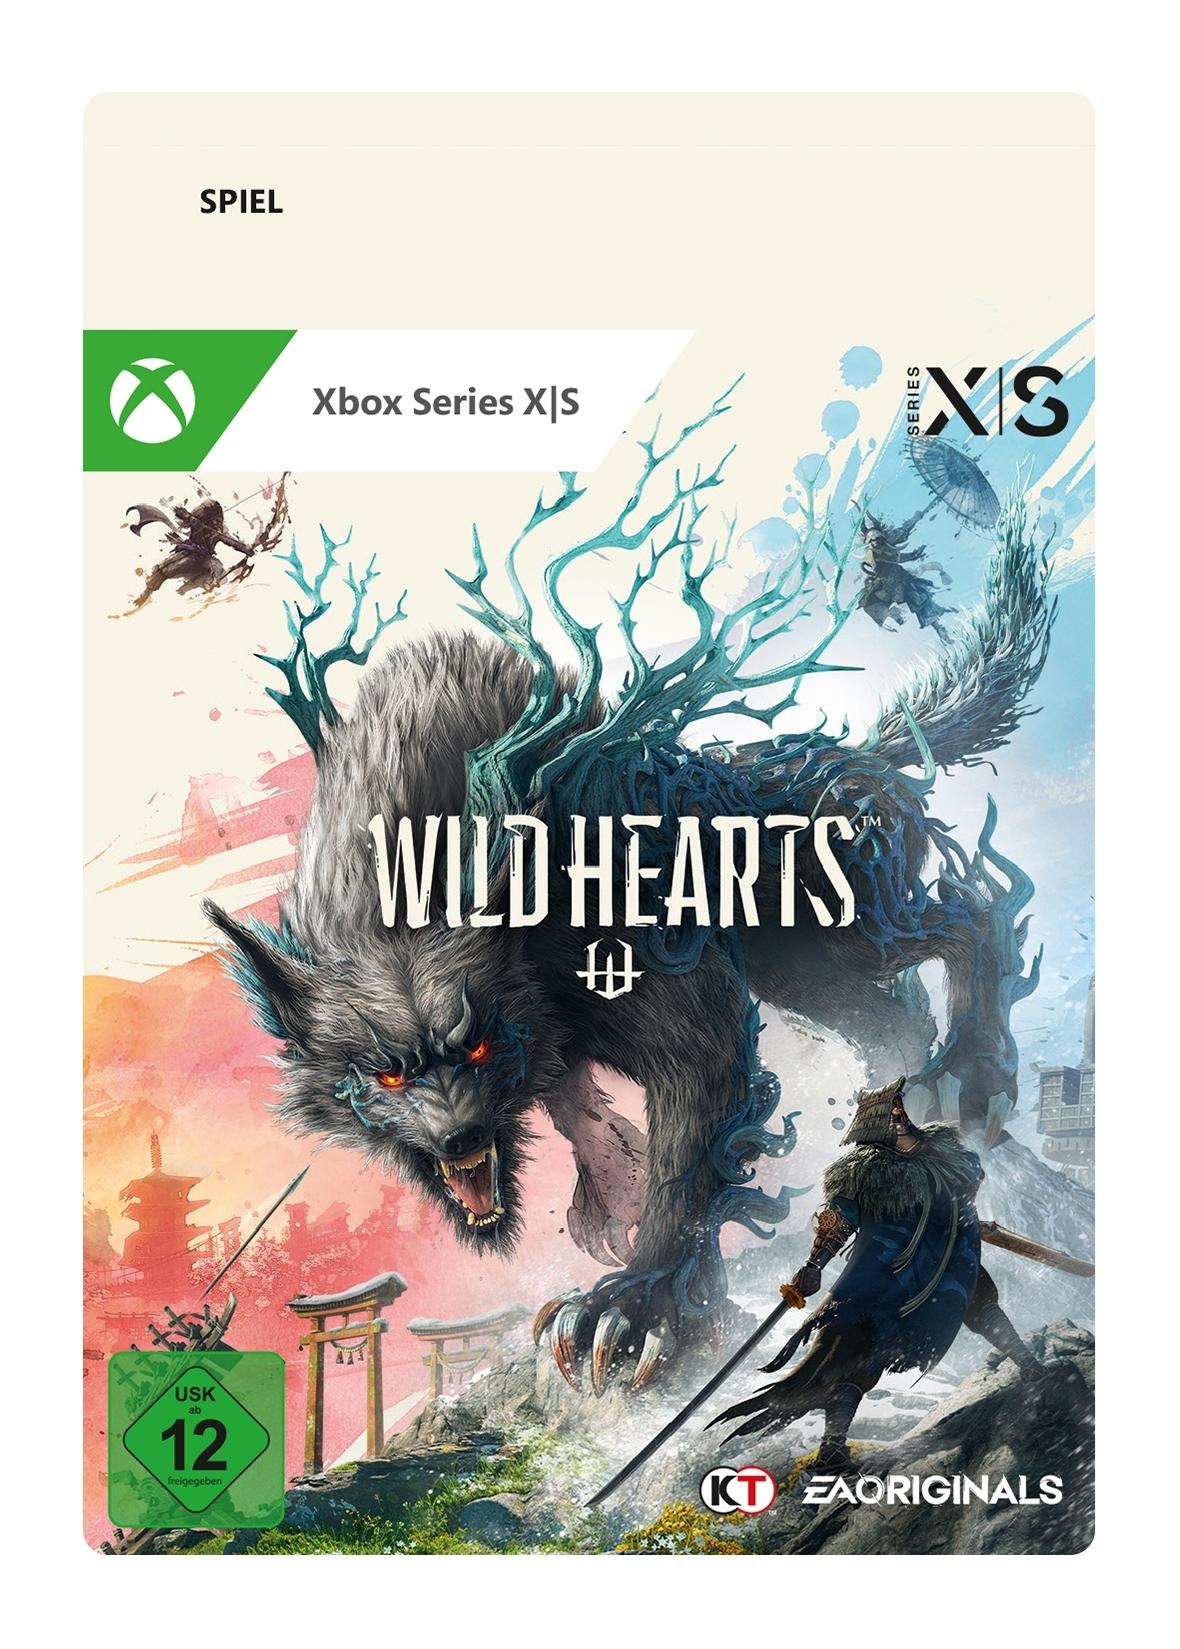 Wild Hearts: Standard Edition - Xbox Series X - Game | G3Q-01471 (f8b41286-96b9-0e46-9902-d4454e46aeae)